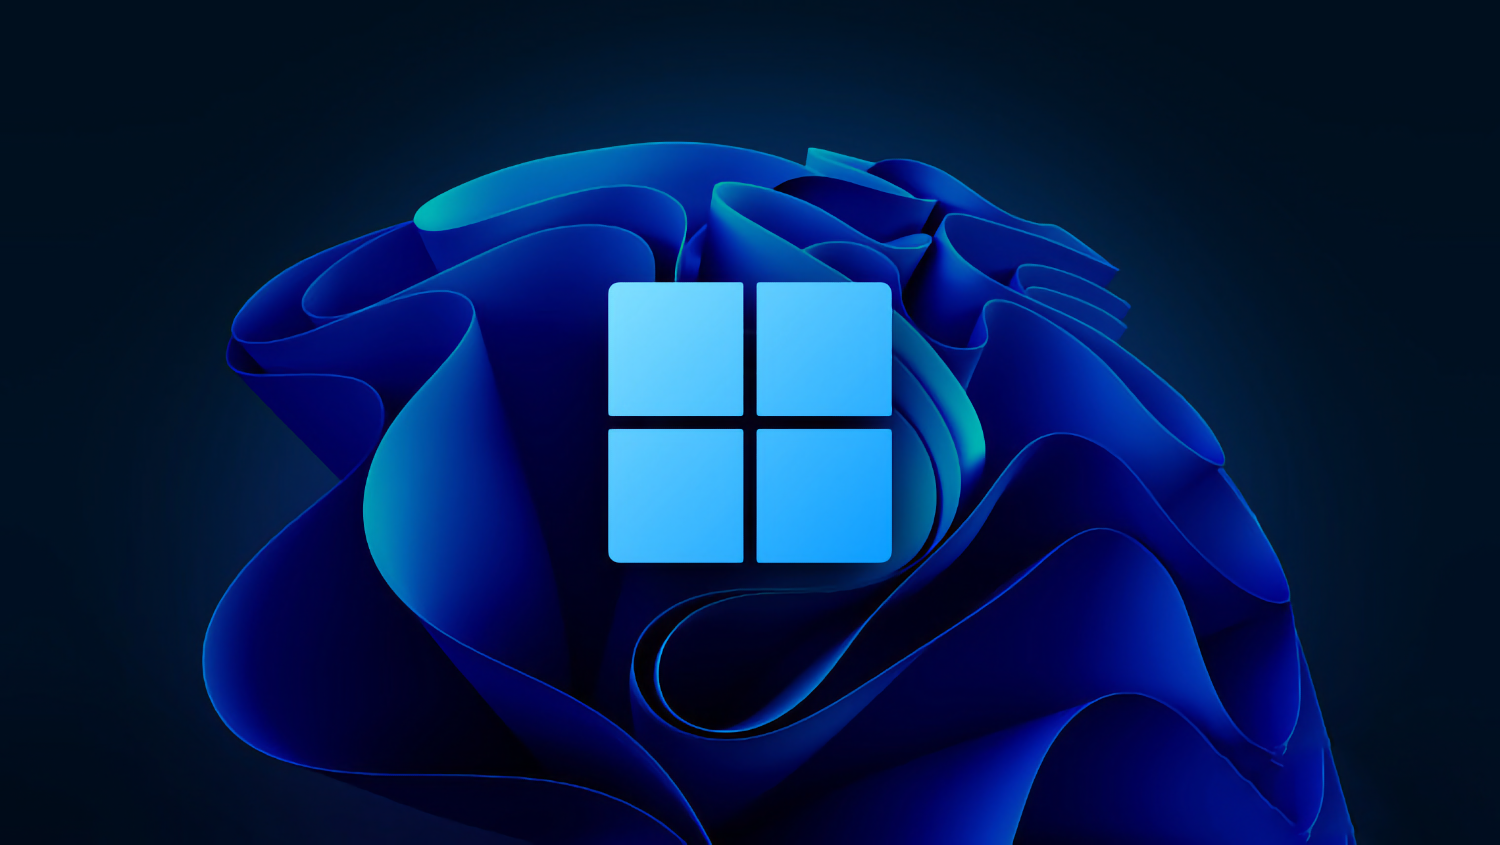 Windows 12 могут начать распространять по подписке, как КинопоискHD или Яндекс.Музыку